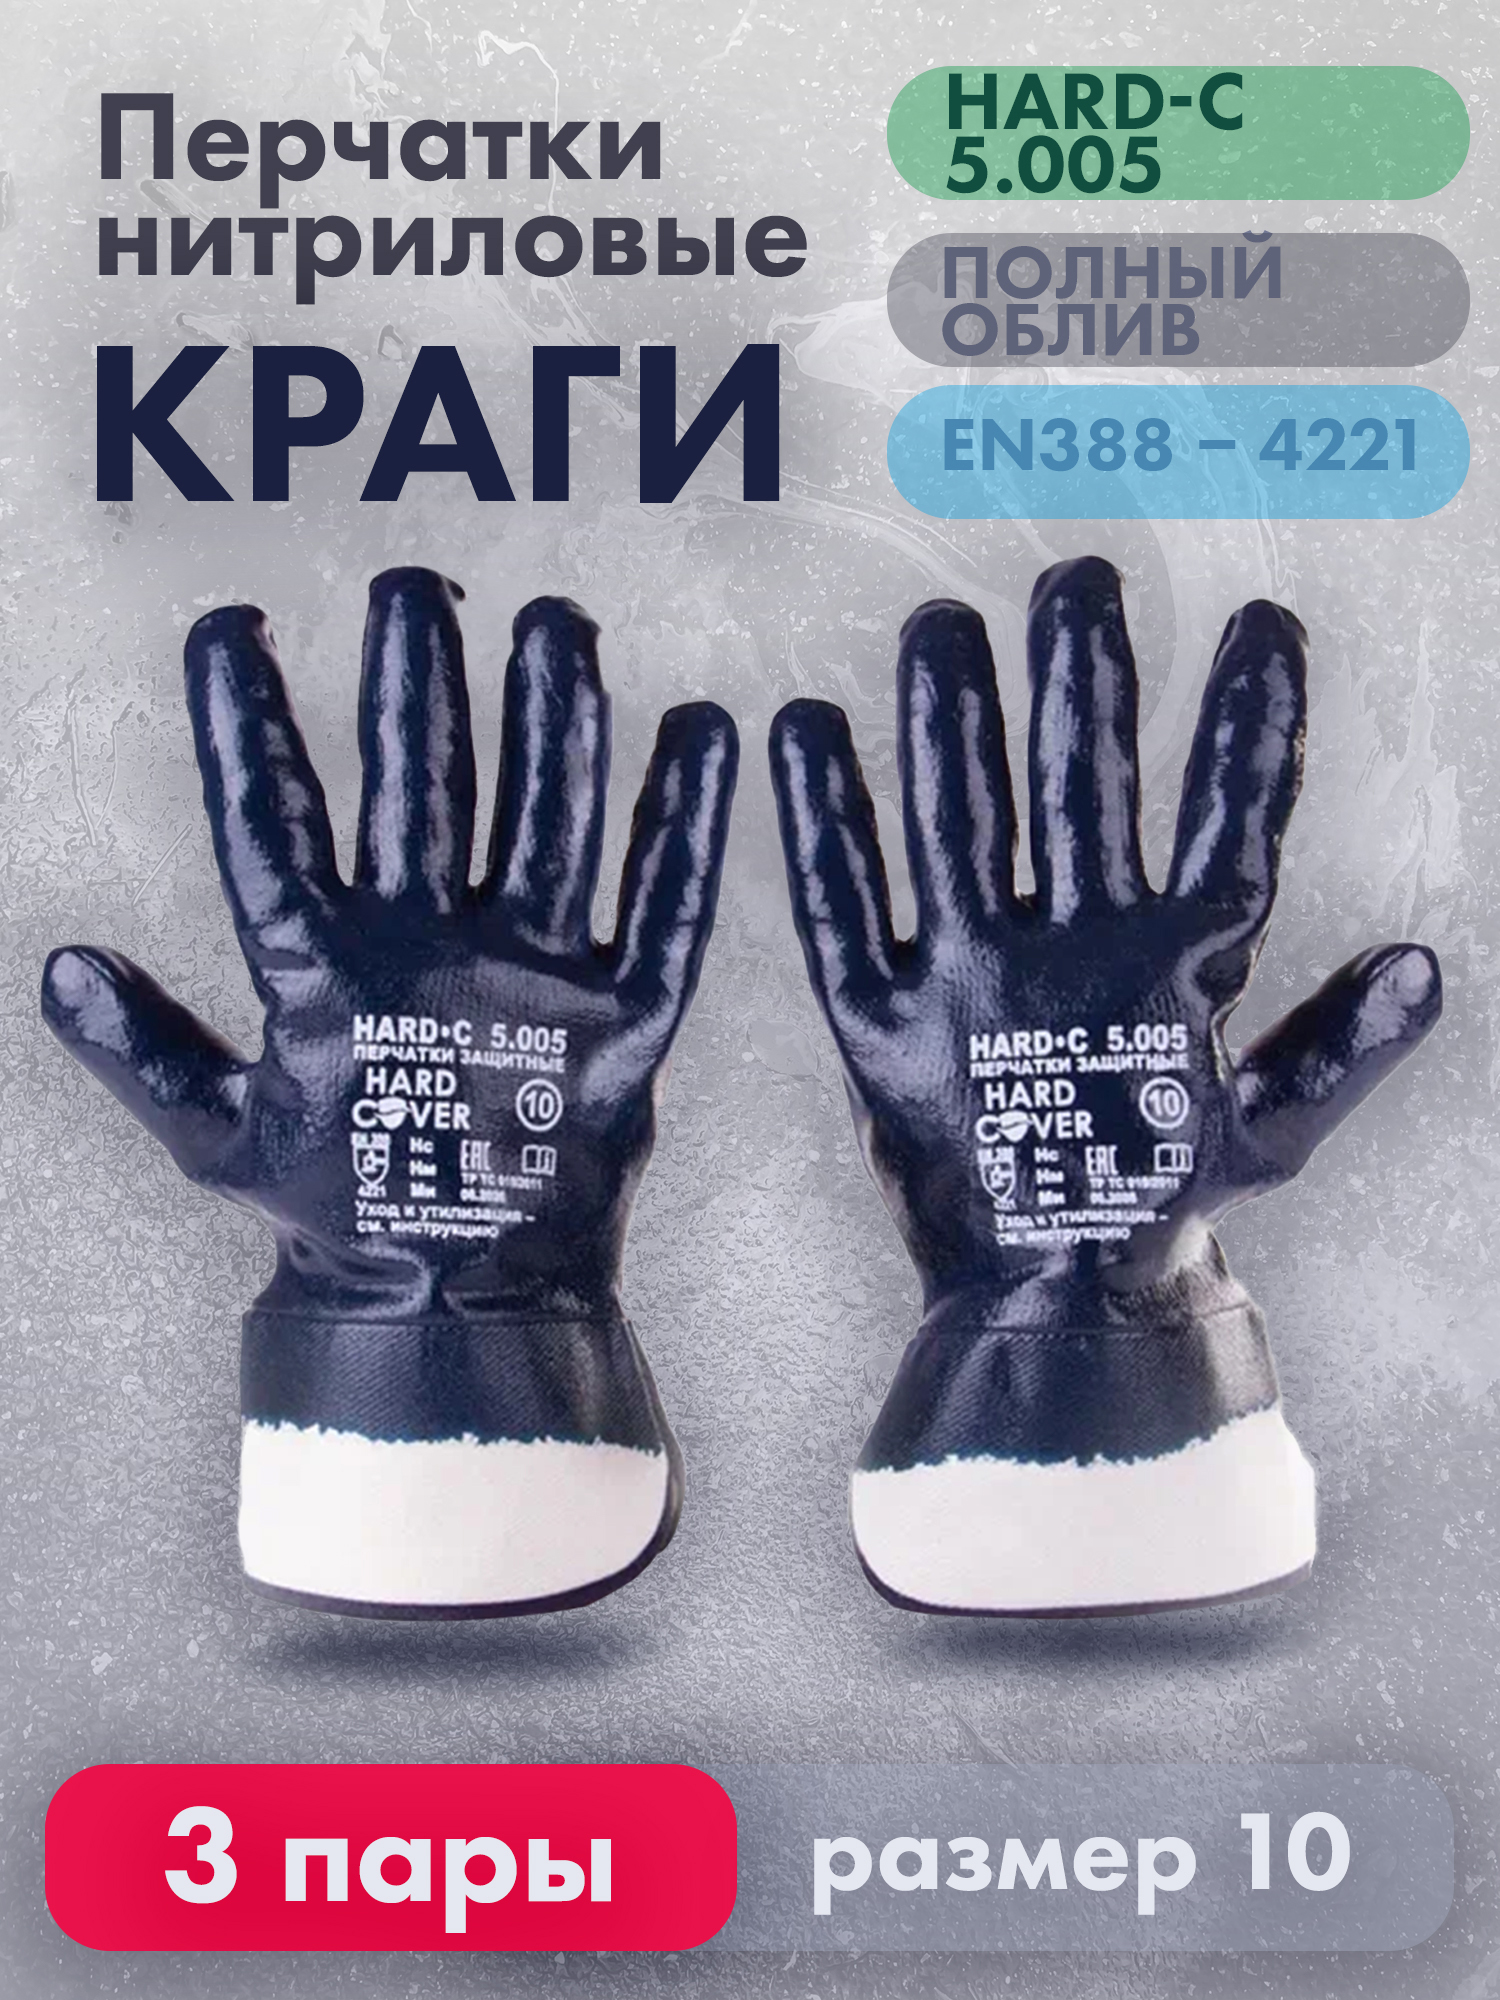 Перчатки рабочие HARD-С нитриловые, полный облив, размер 10, 3 пары нитриловые перчатки armprotect облегченные полный облив манжета синие р10 nit005 46311